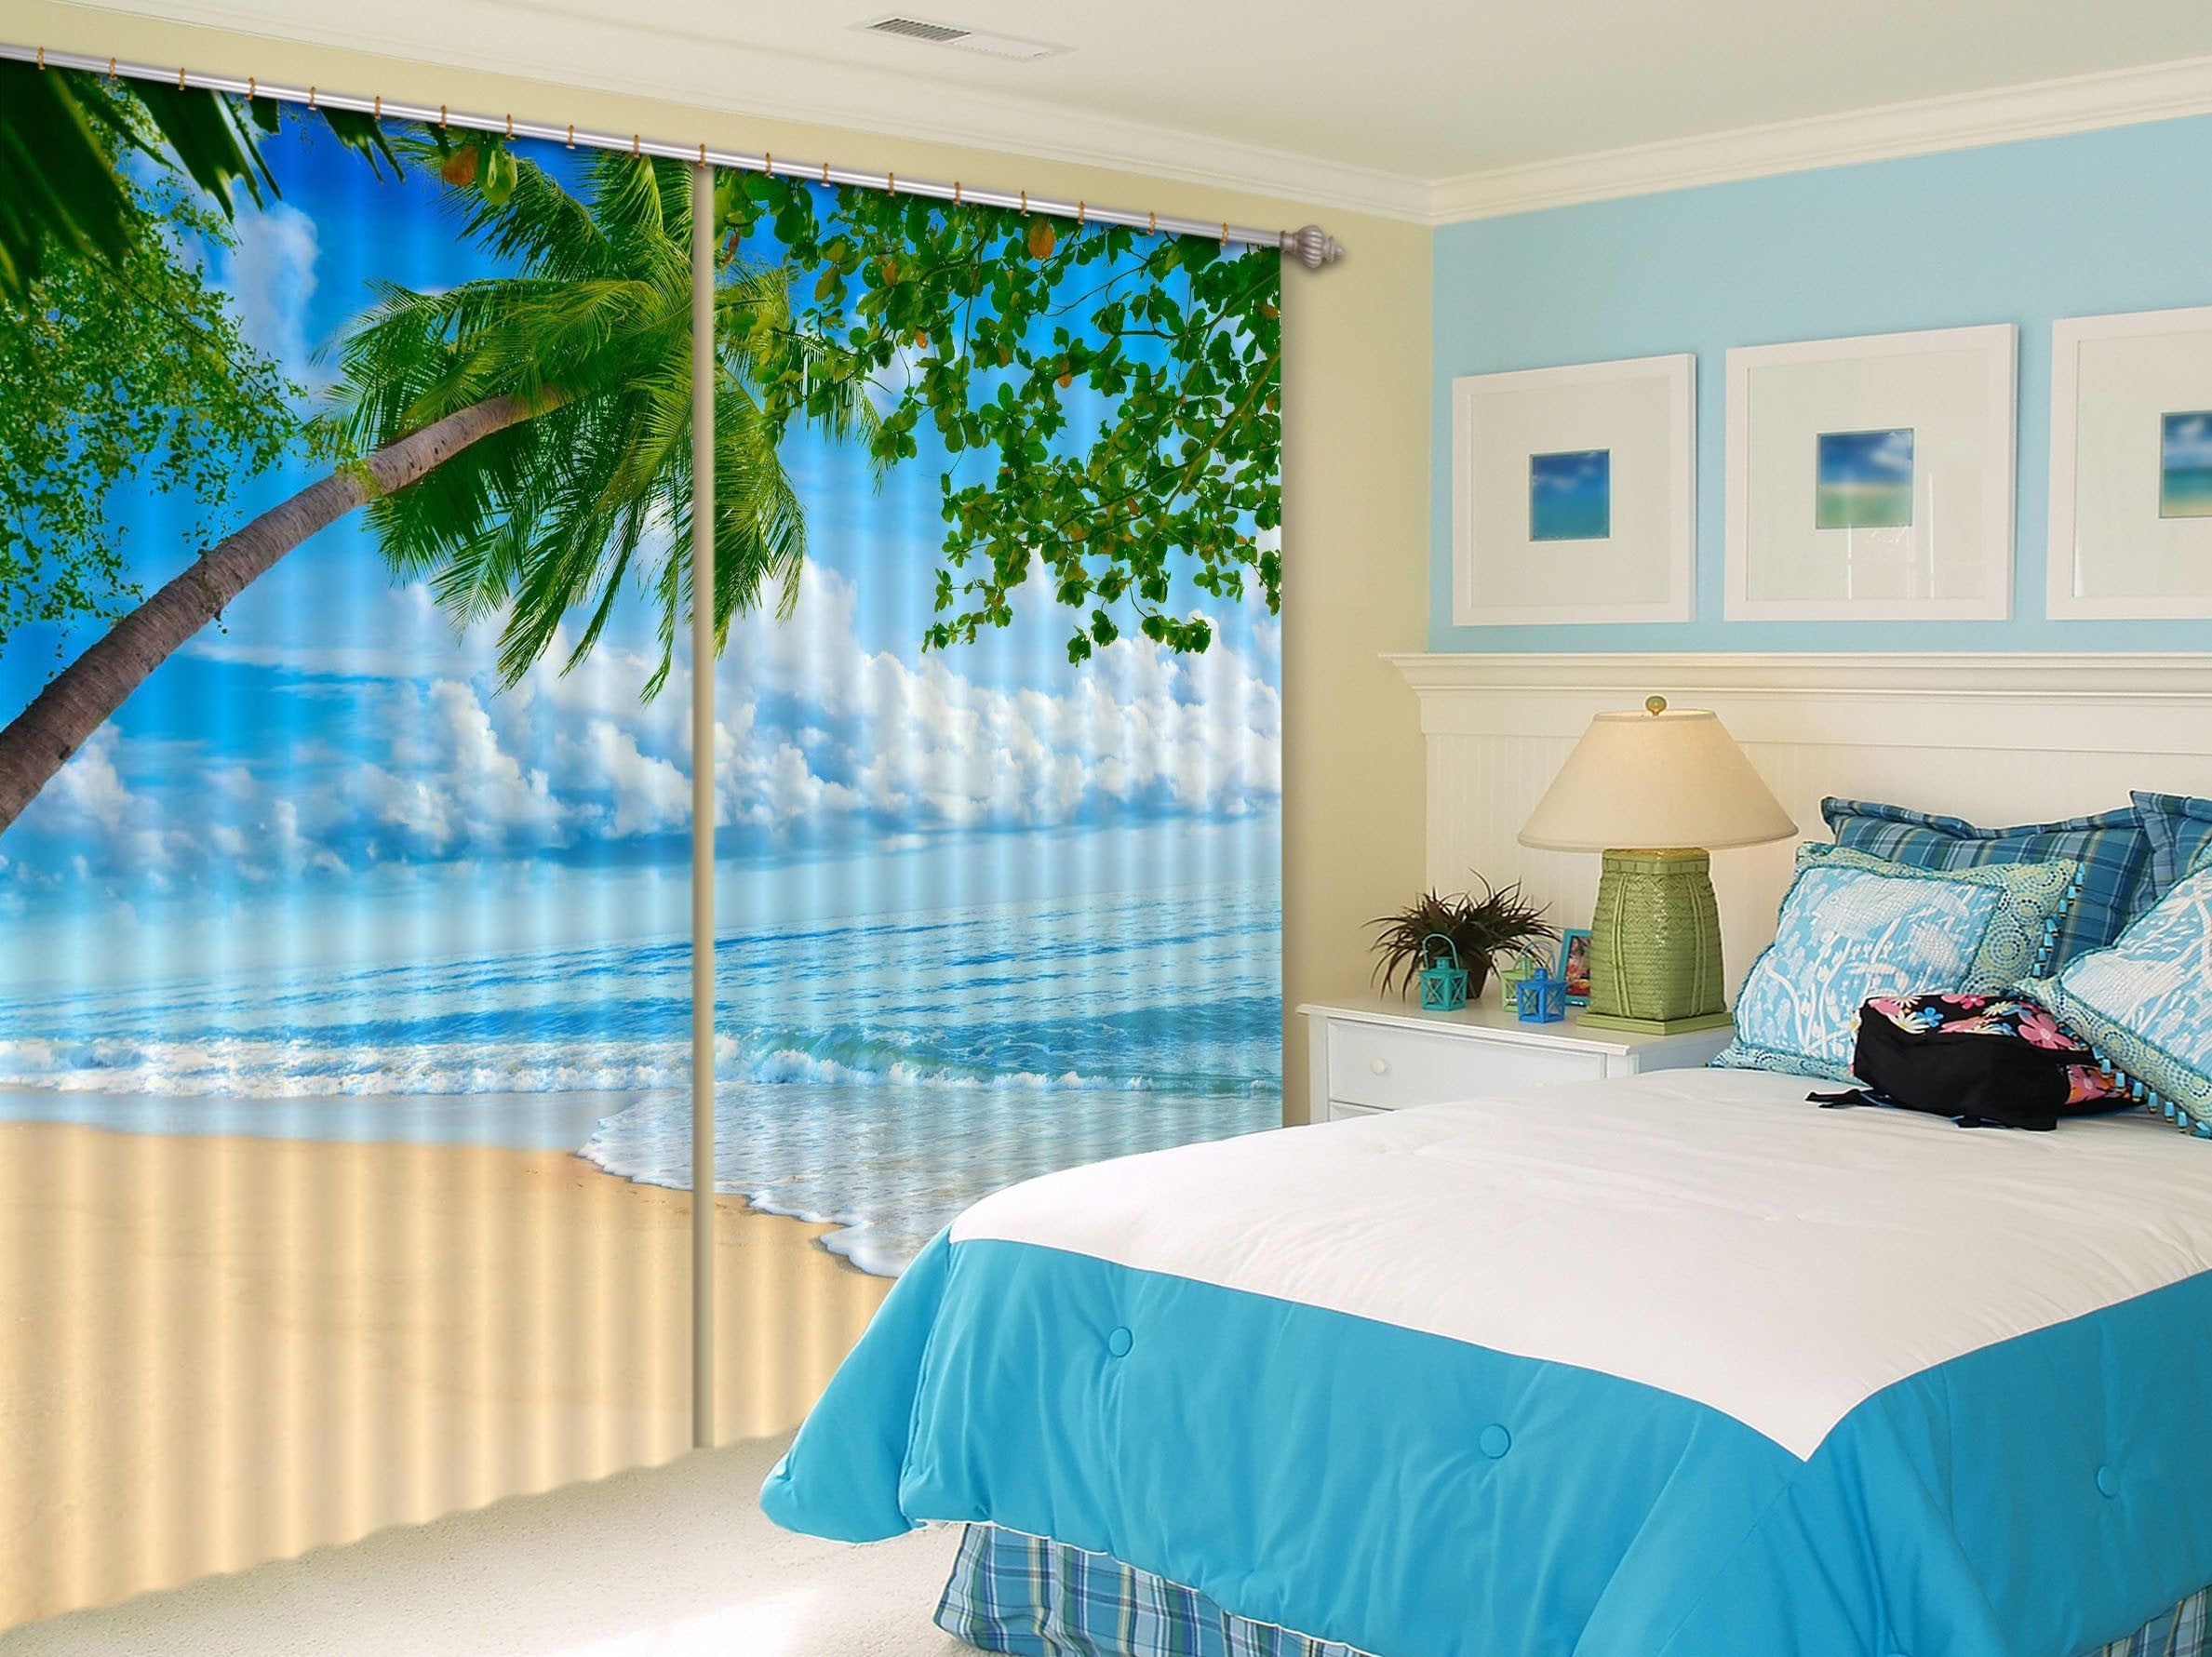 3D Pretty Beach 100 Curtains Drapes Wallpaper AJ Wallpaper 